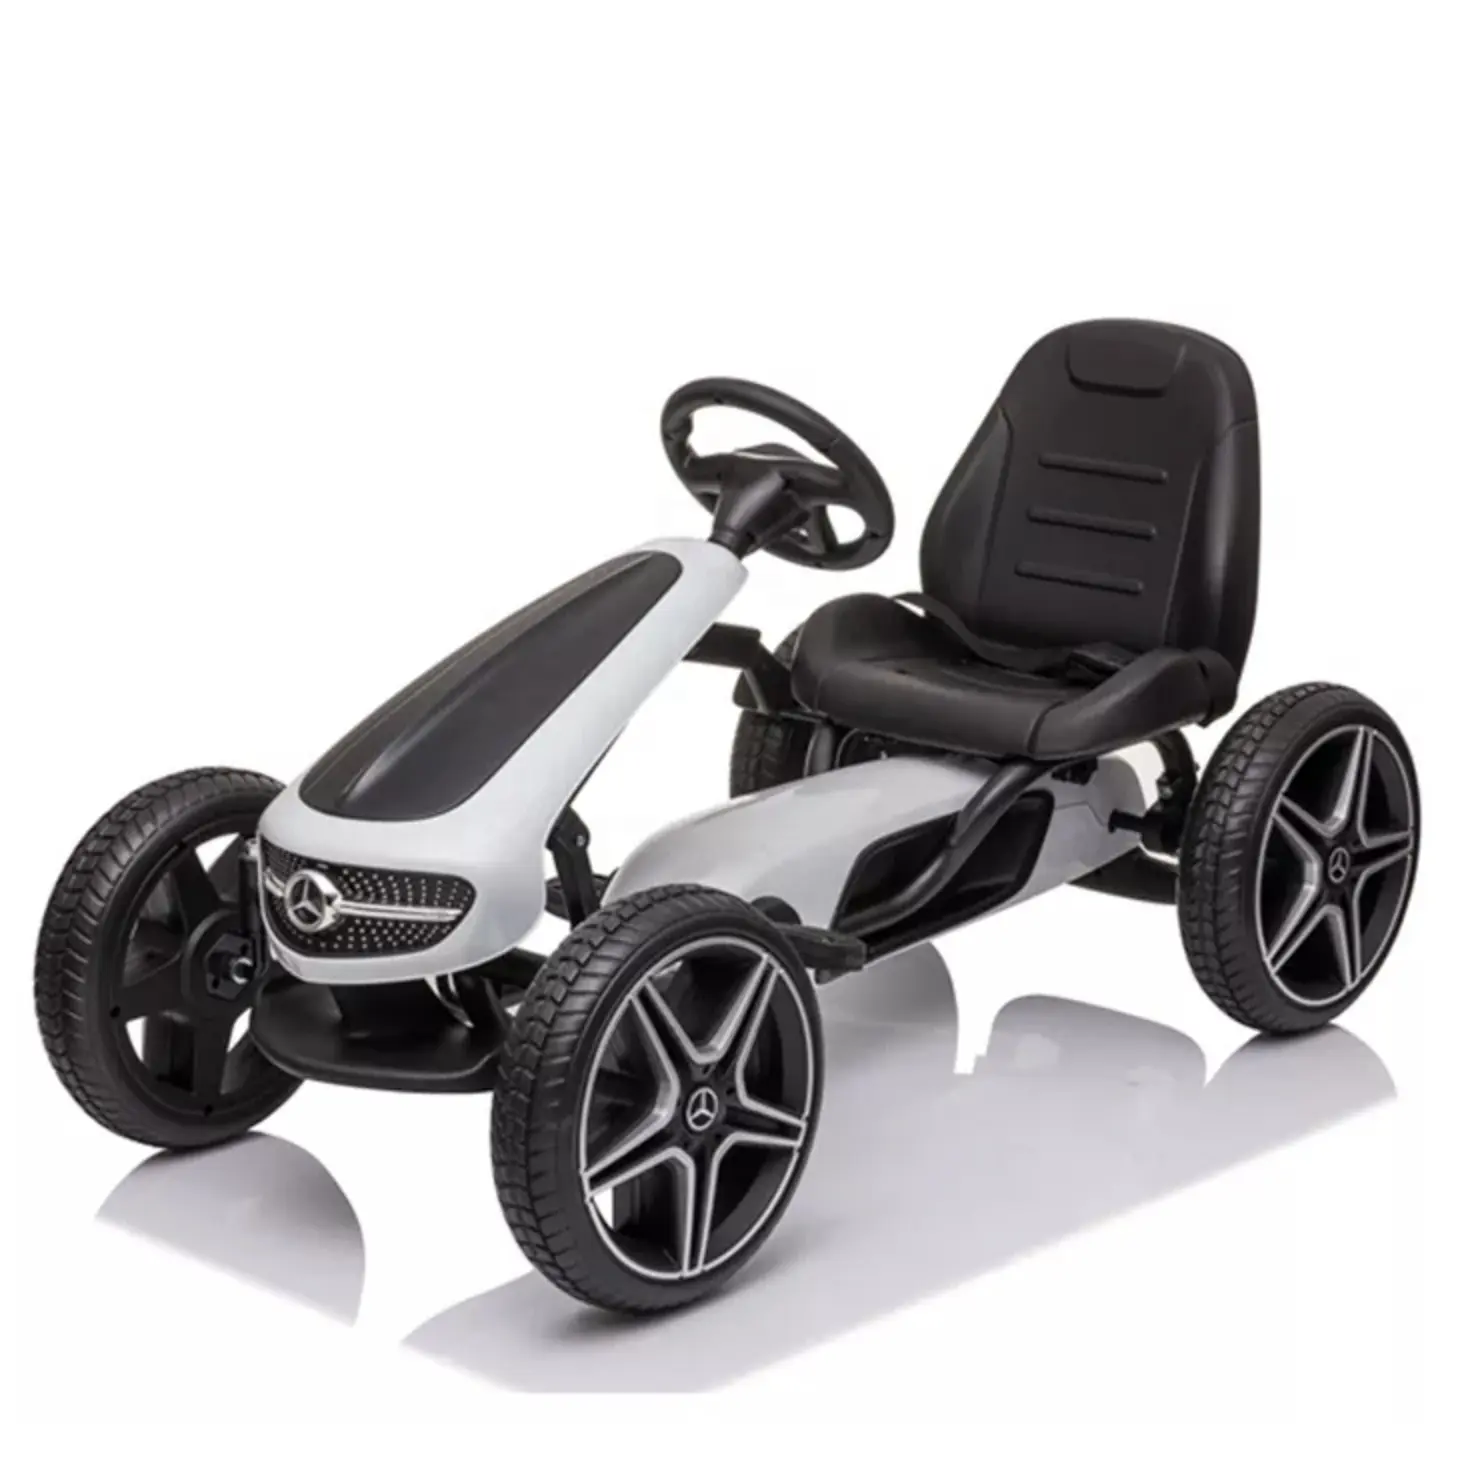 2022 neueste lizenzierte Go-Cart mit Pedal fahrt auf dem Auto